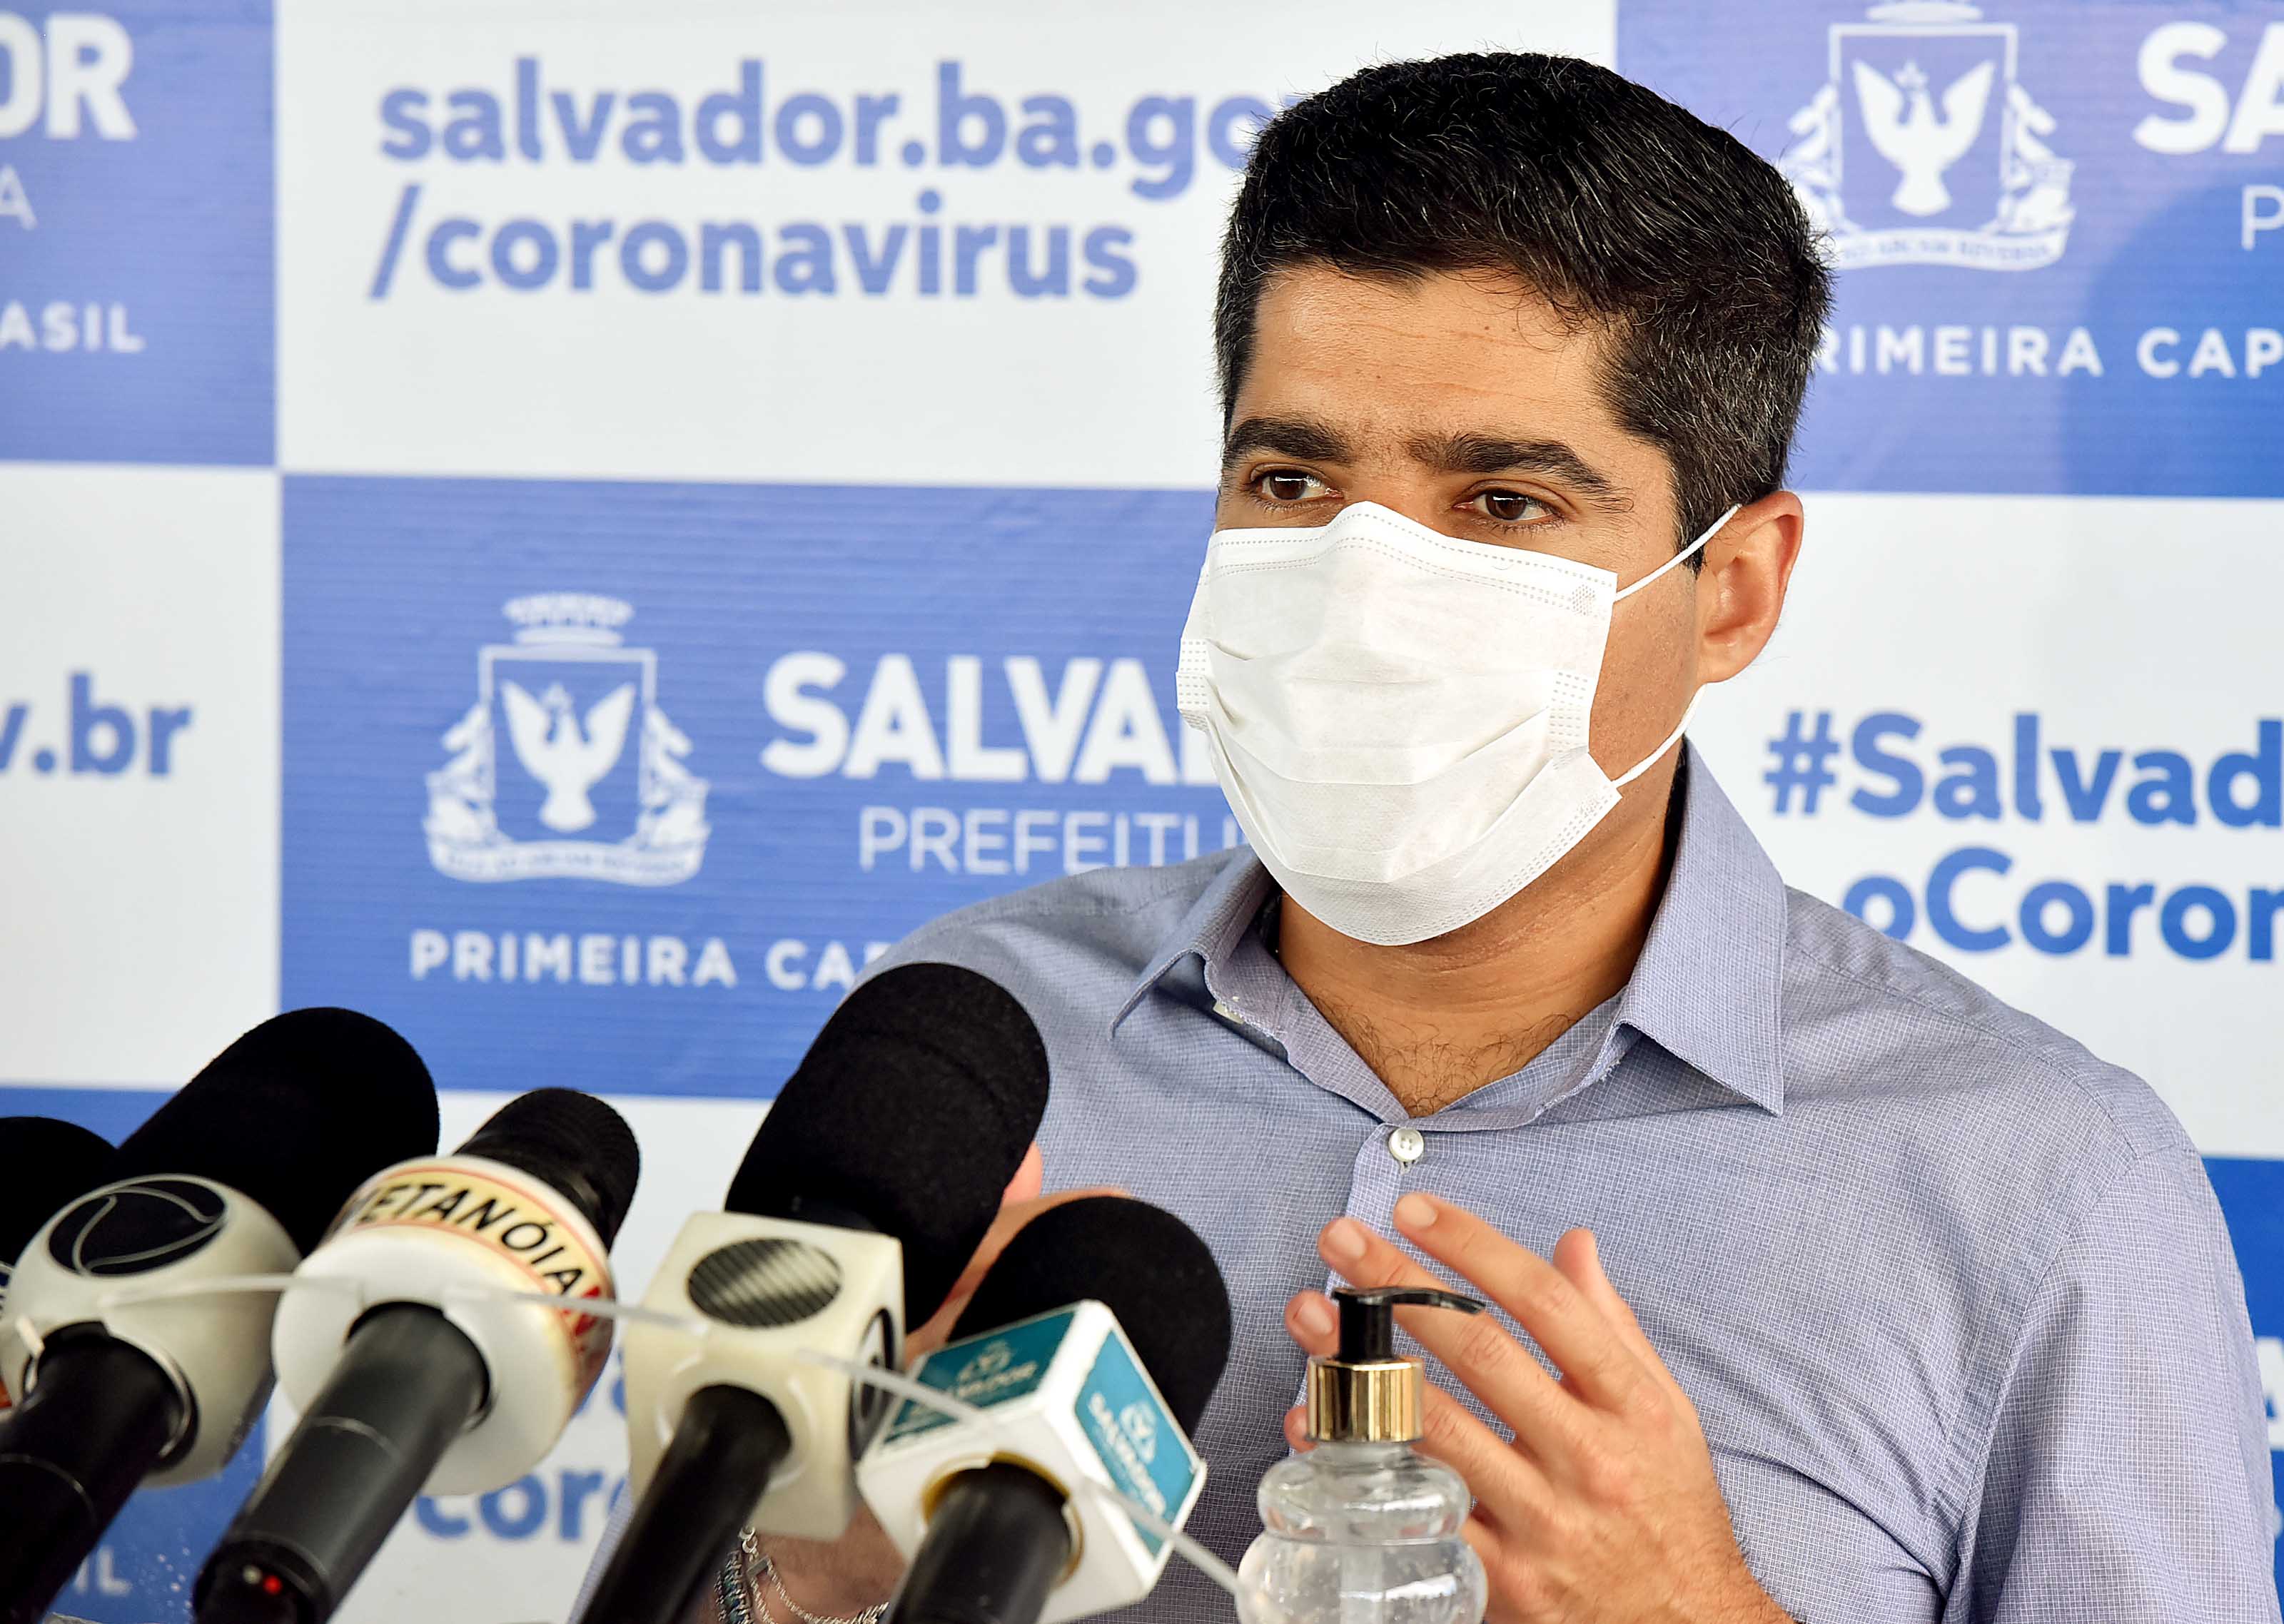   Salvador tem 86% de ocupação dos leitos de UTI da rede pública